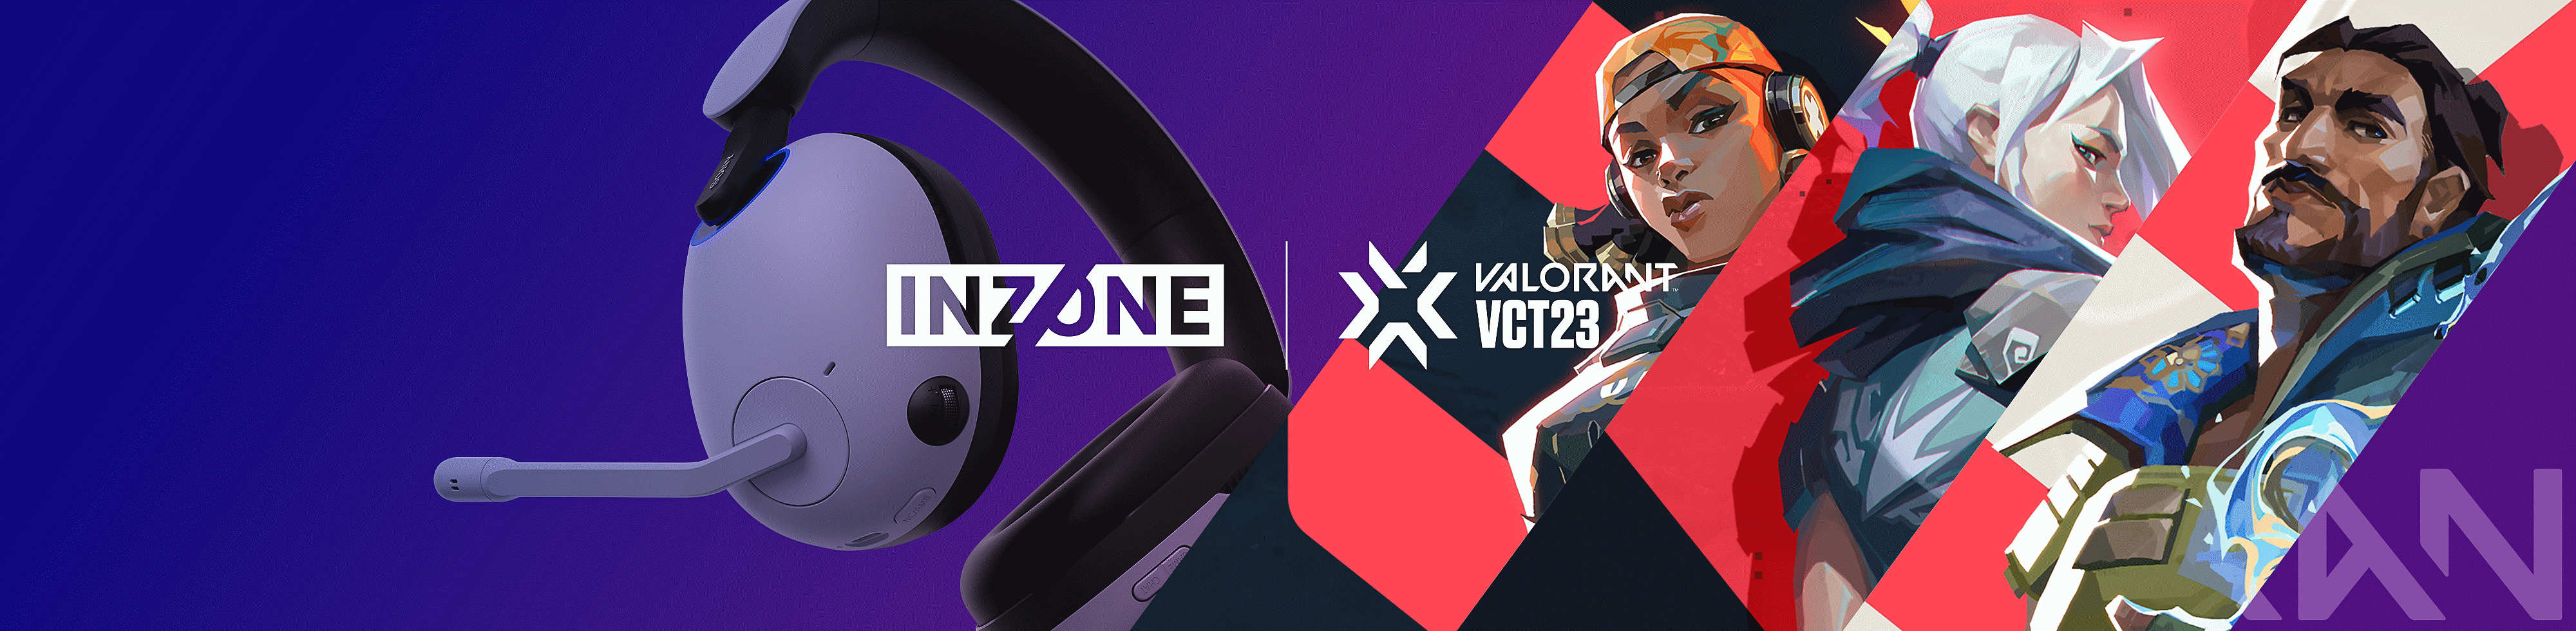 Image du casque gaming INZONE H9 de Sony avec des personnages de VALORANT et les logos INZONE et VALORANT VCT23